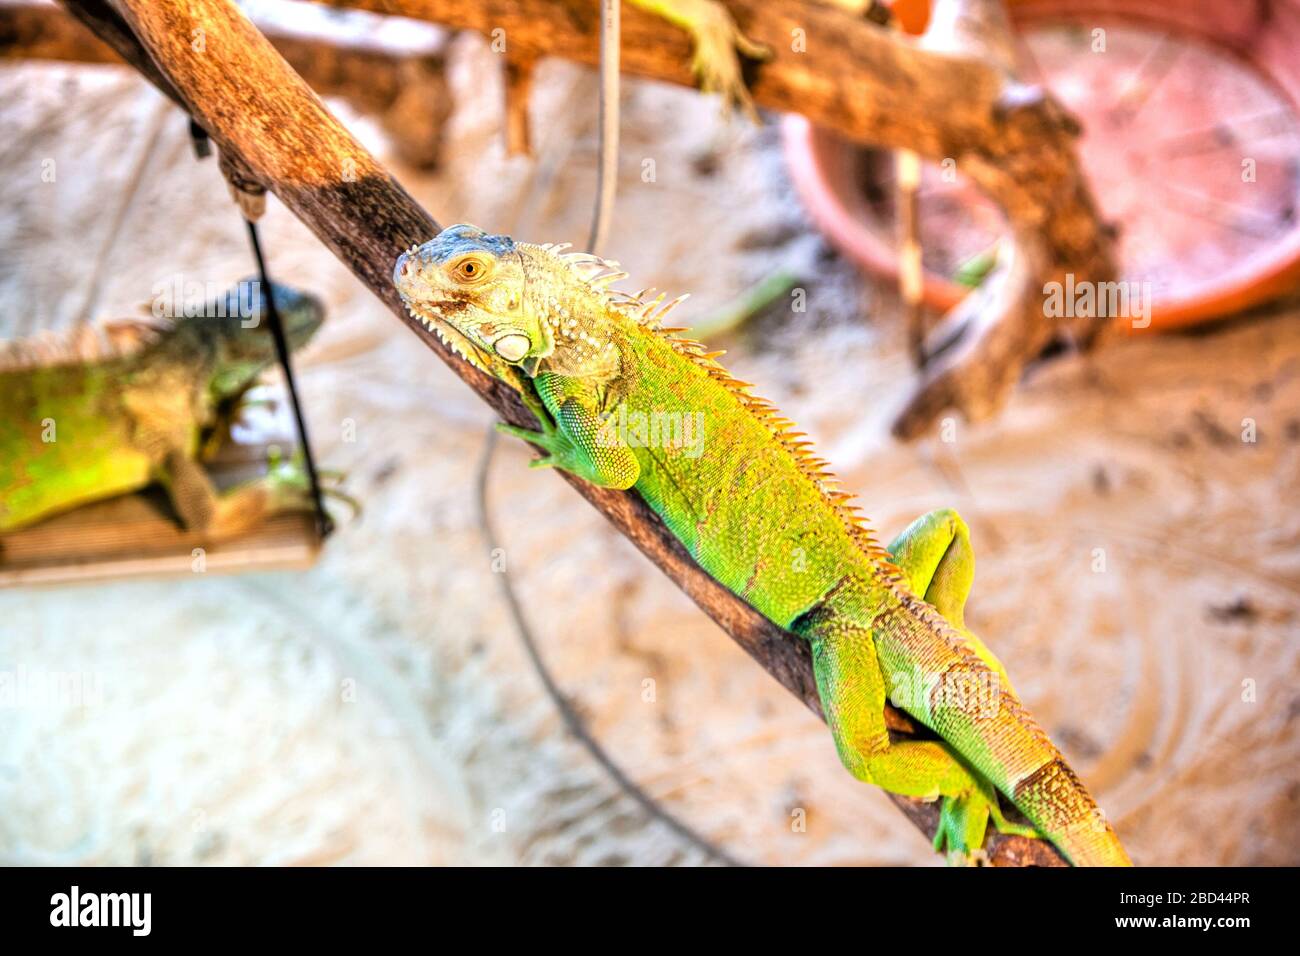 Einzelnes grünes Iguana-Haustier, das auf Holzzweigen krabbelt und in einem Käfig eingeschlossen ist. Stockfoto